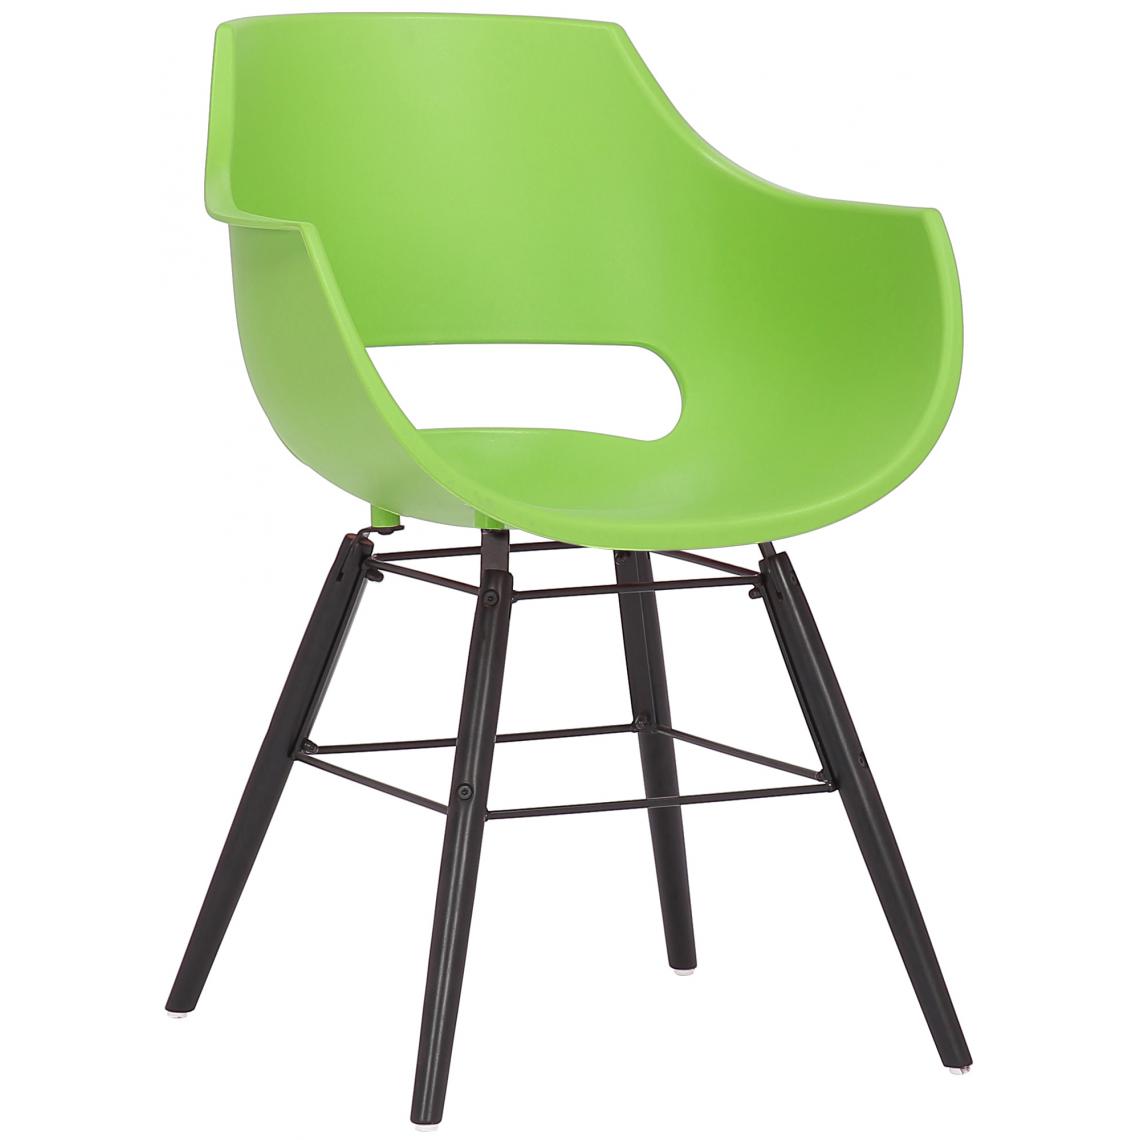 Icaverne - Superbe Chaise gamme Helsinki plastique noir couleur vert - Chaises